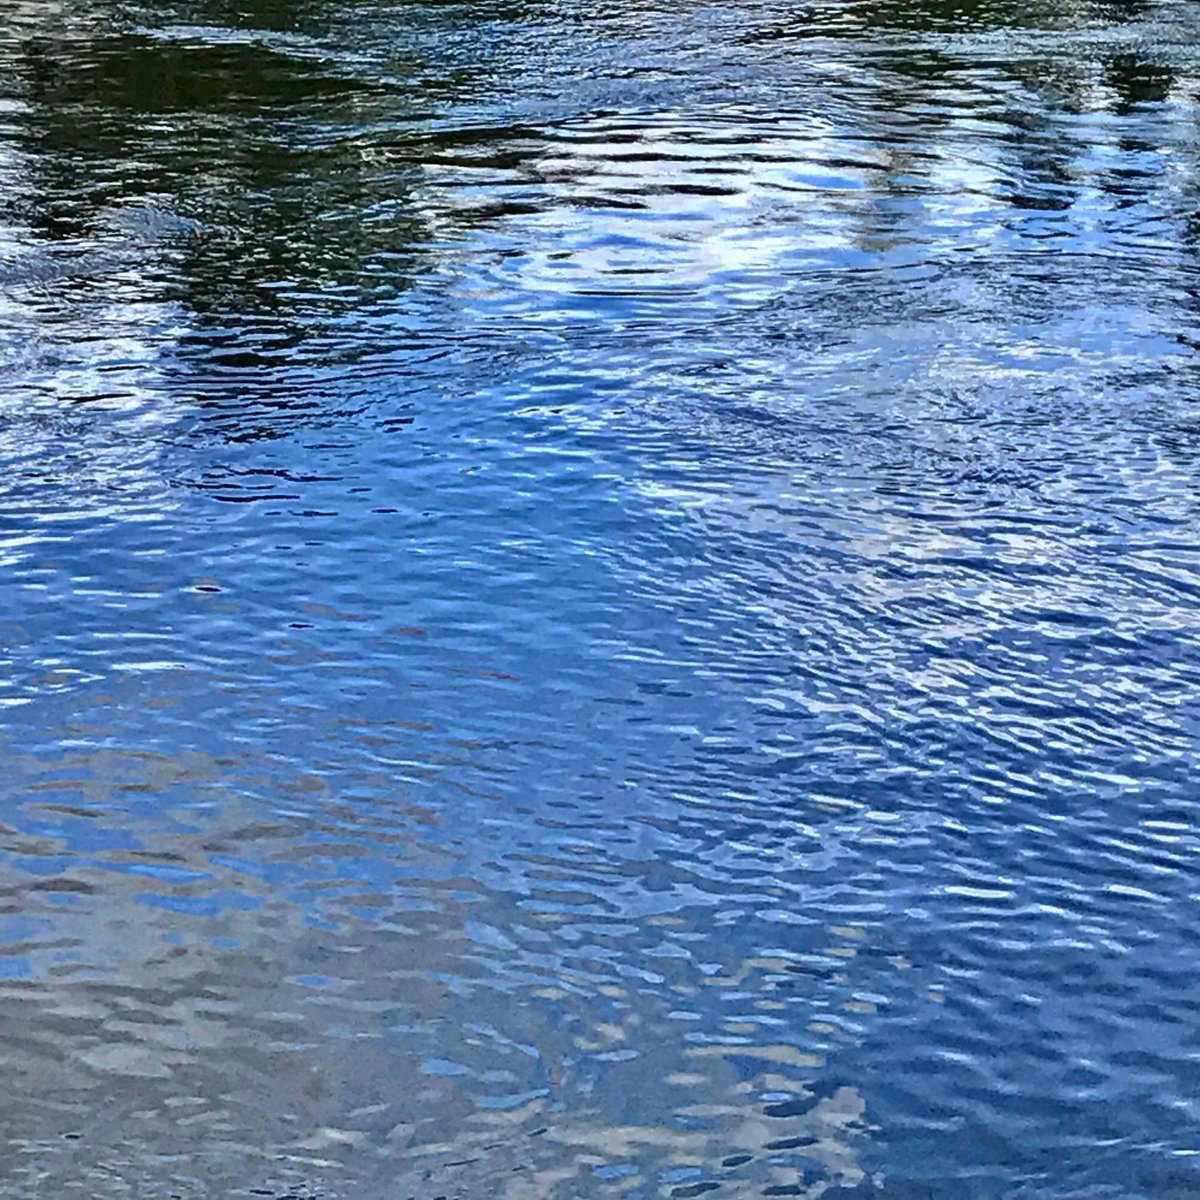 21.4.2022 Su akar, yolunu bulur. L’eau court, trouve son chemin.
#photodujour #photooftheday #water #riviere #river #laloire #nantes